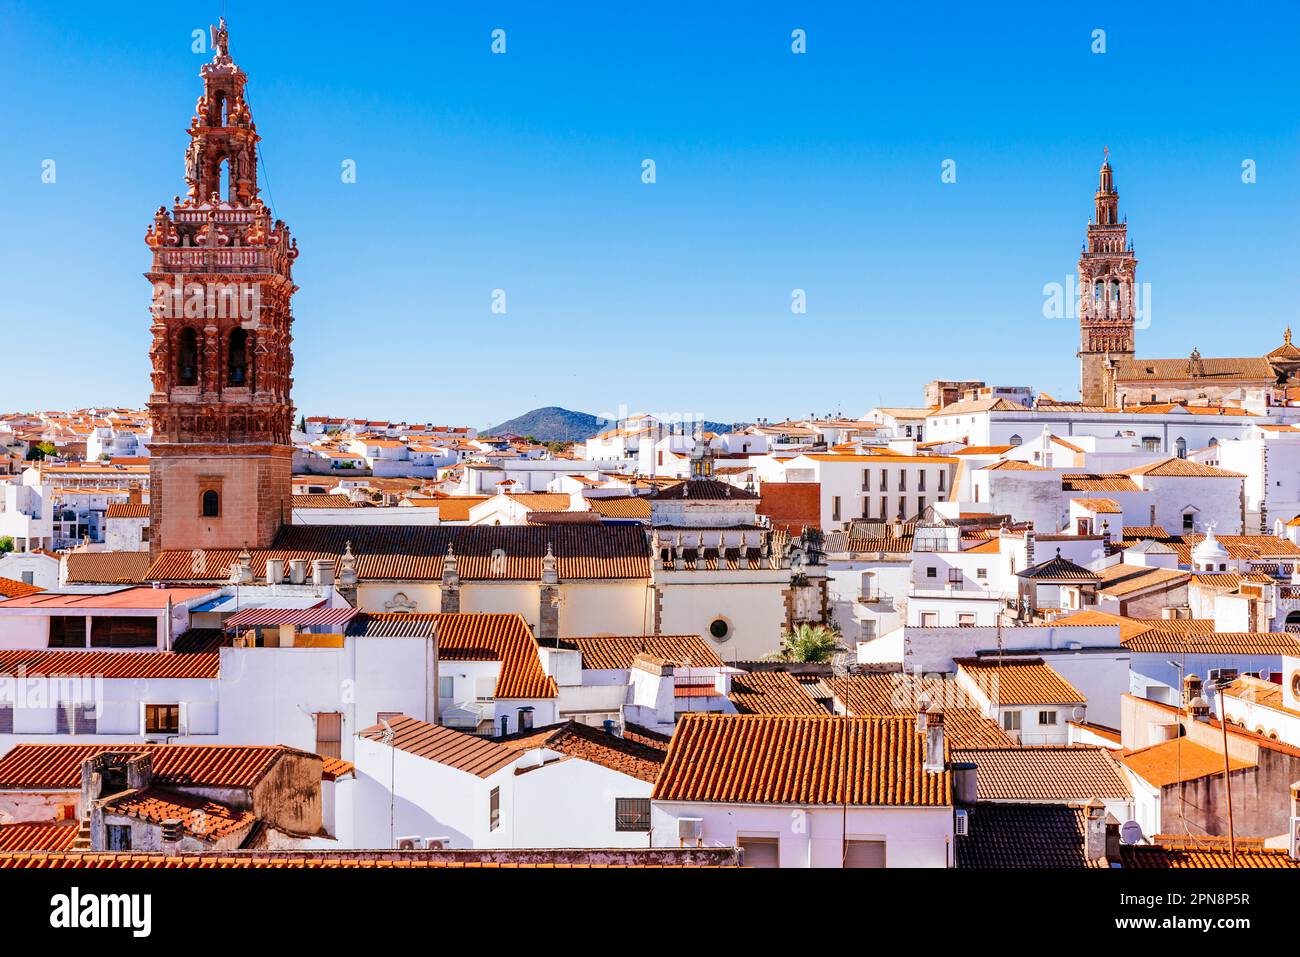 Vue aérienne de la ville de Jerez de los Caballeros mettant en évidence les clochers de l'église de San Miguel (L) et de l'église de San Bartolome (R). J Banque D'Images